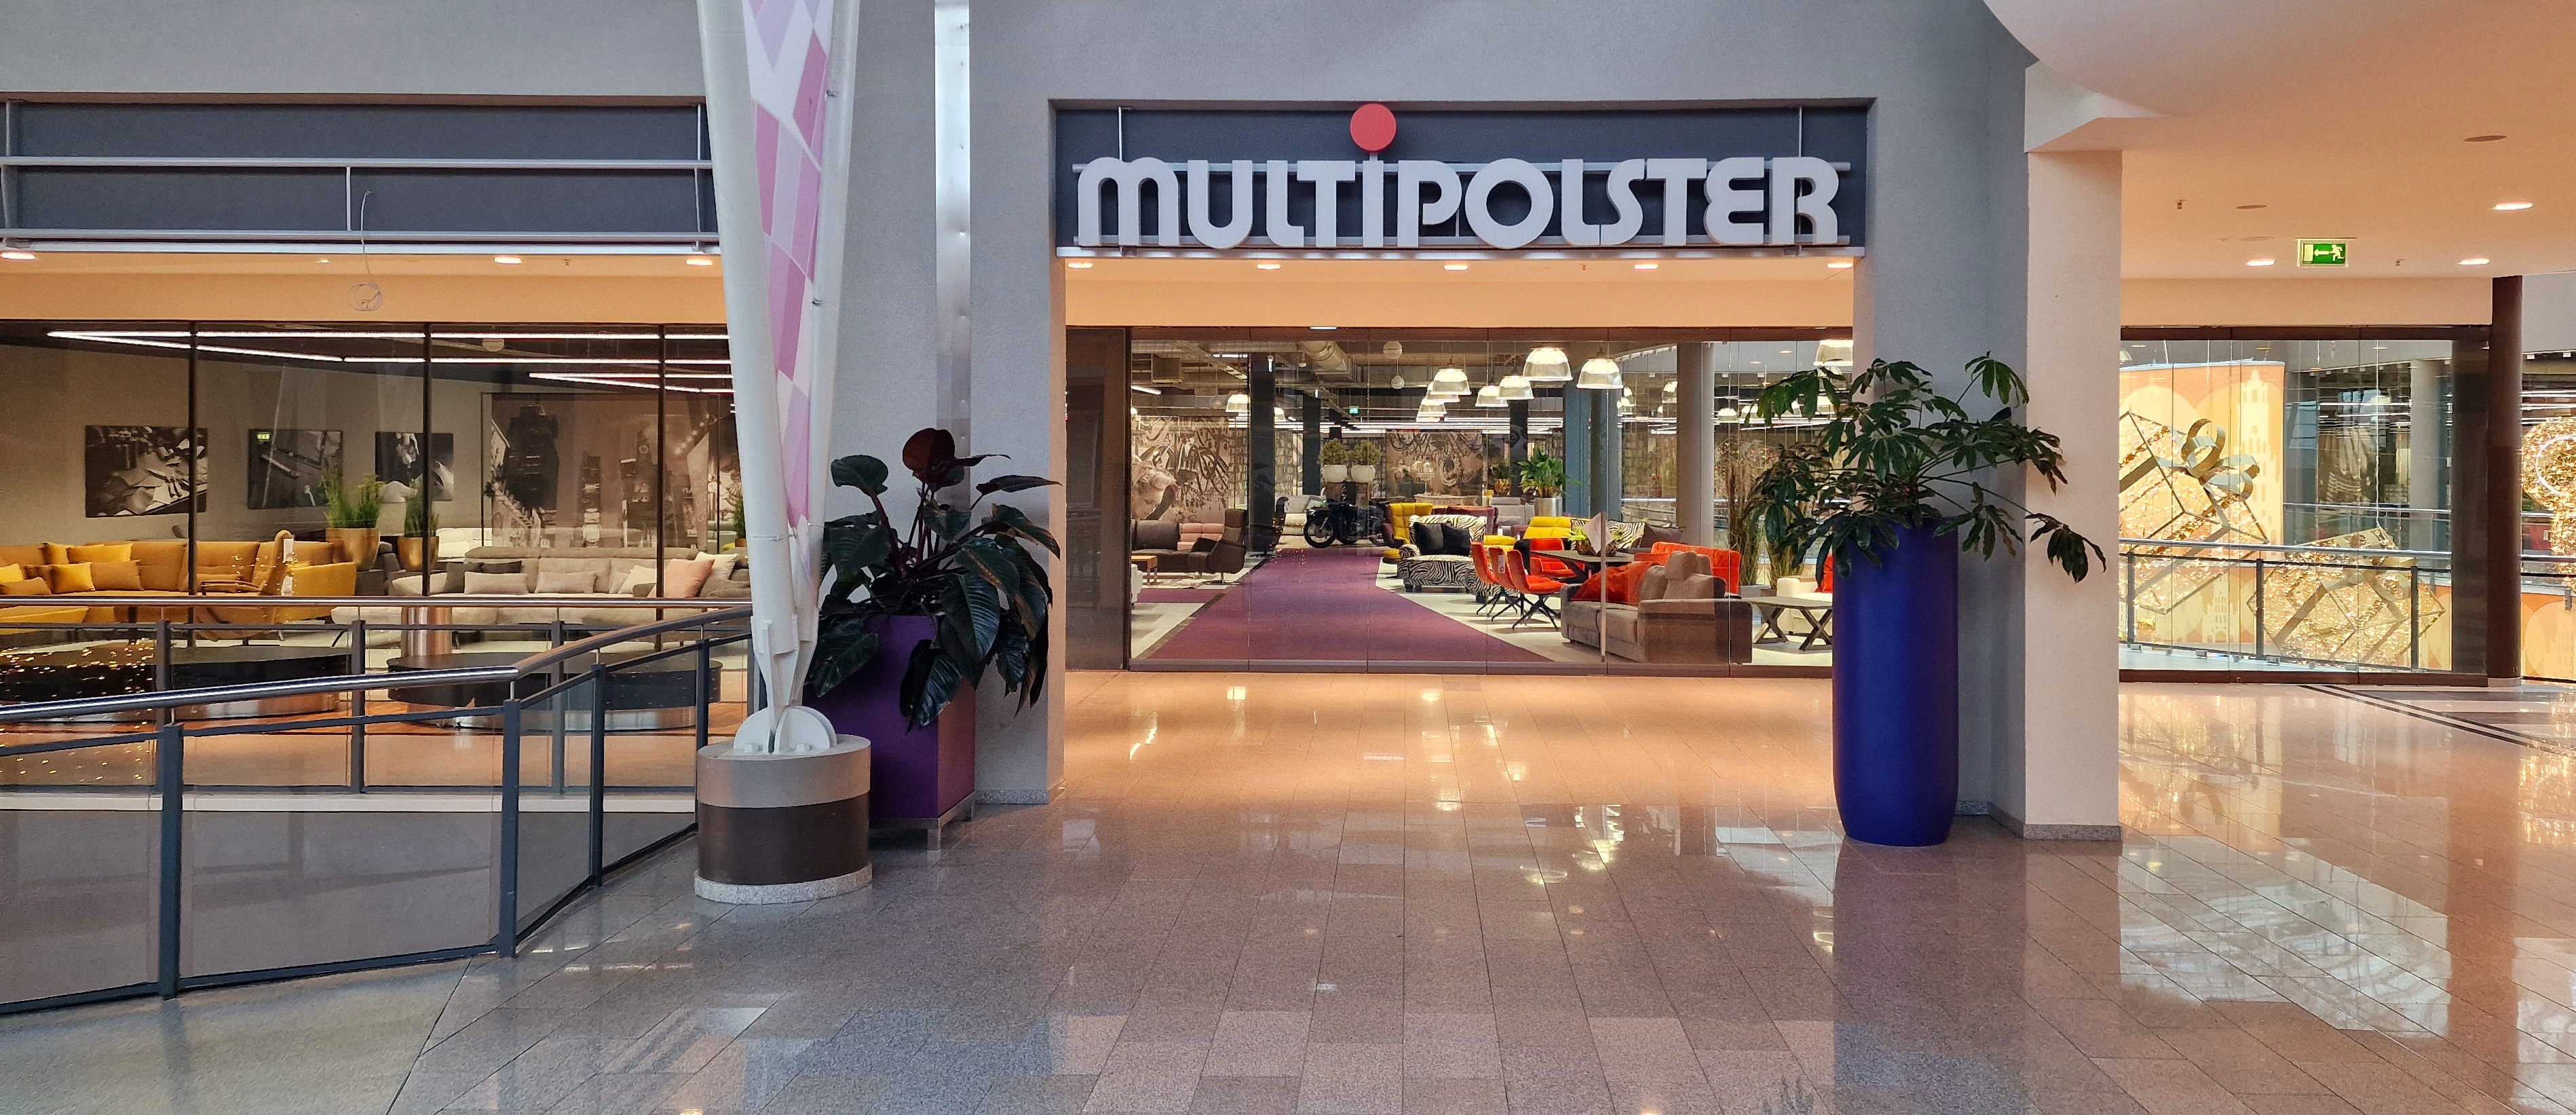 Bilder Multipolster - A10 Center